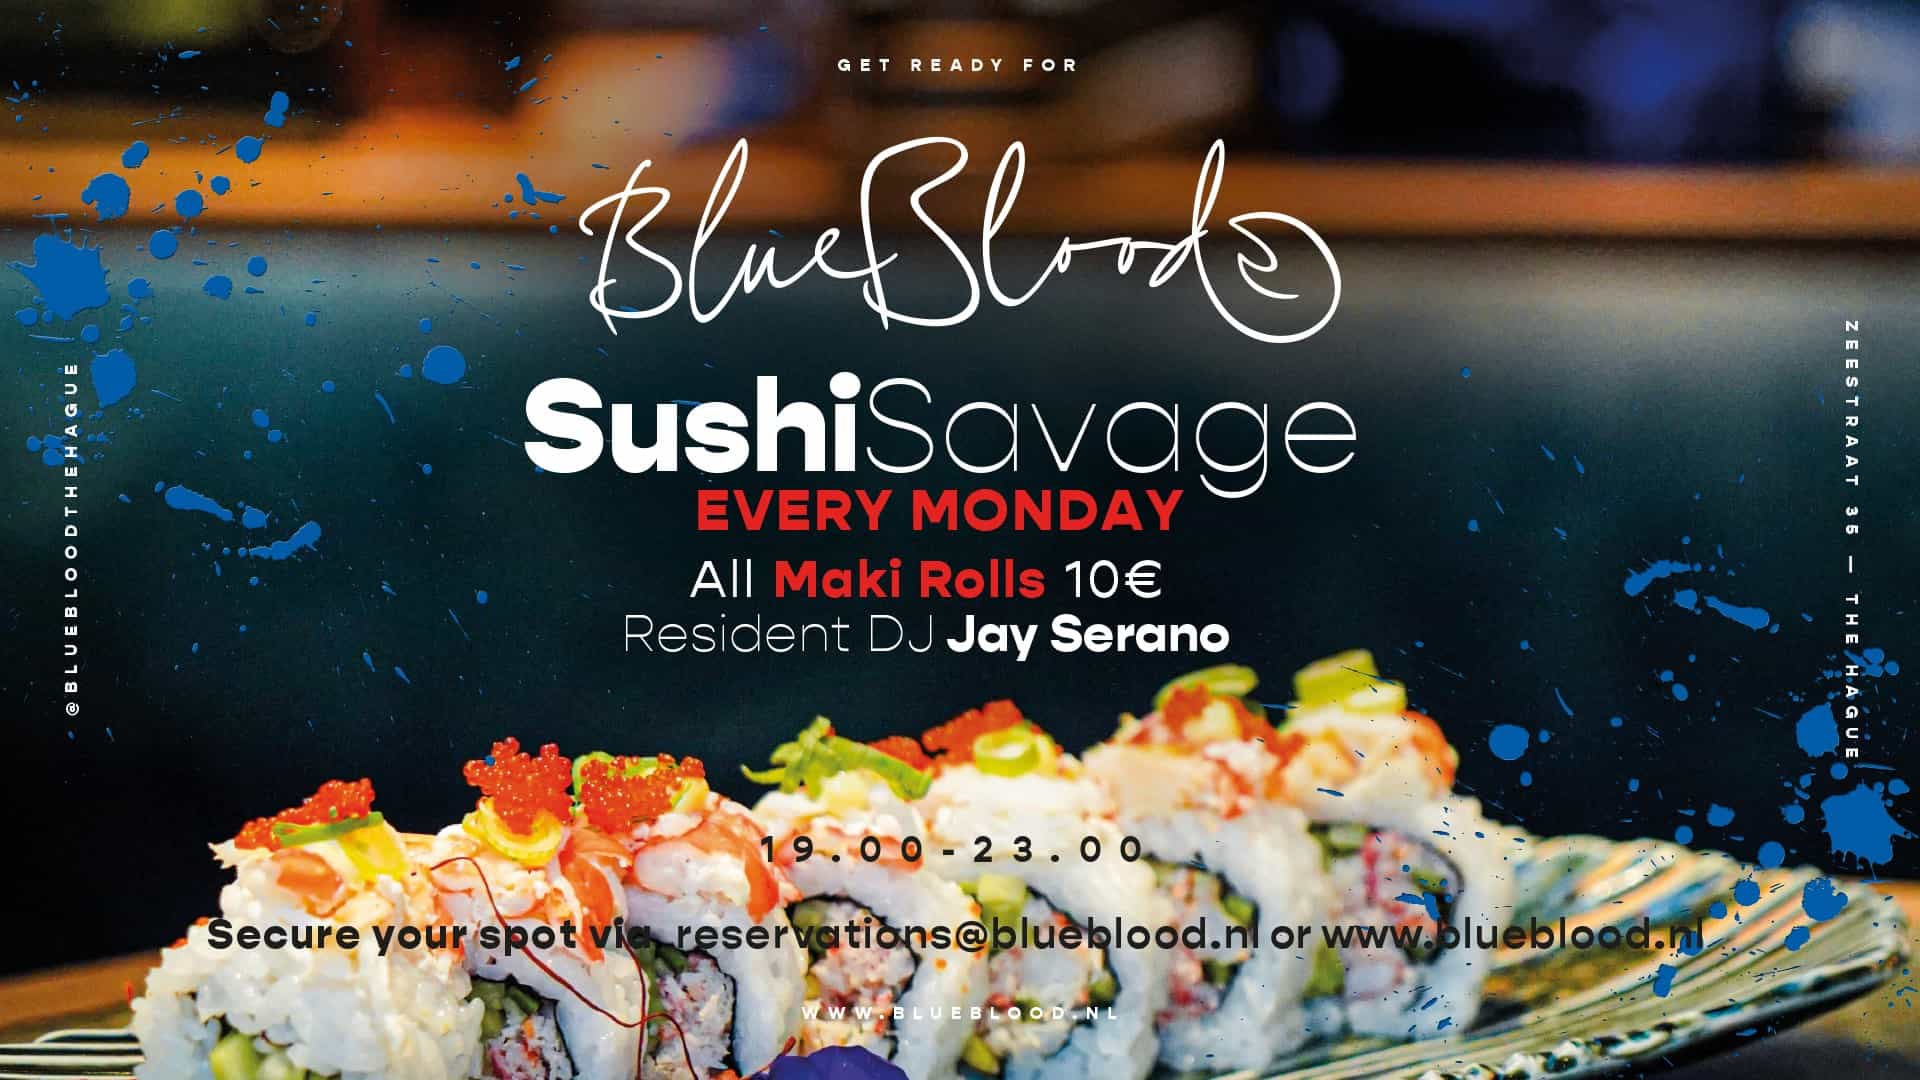 Sushi Savage Blueblood